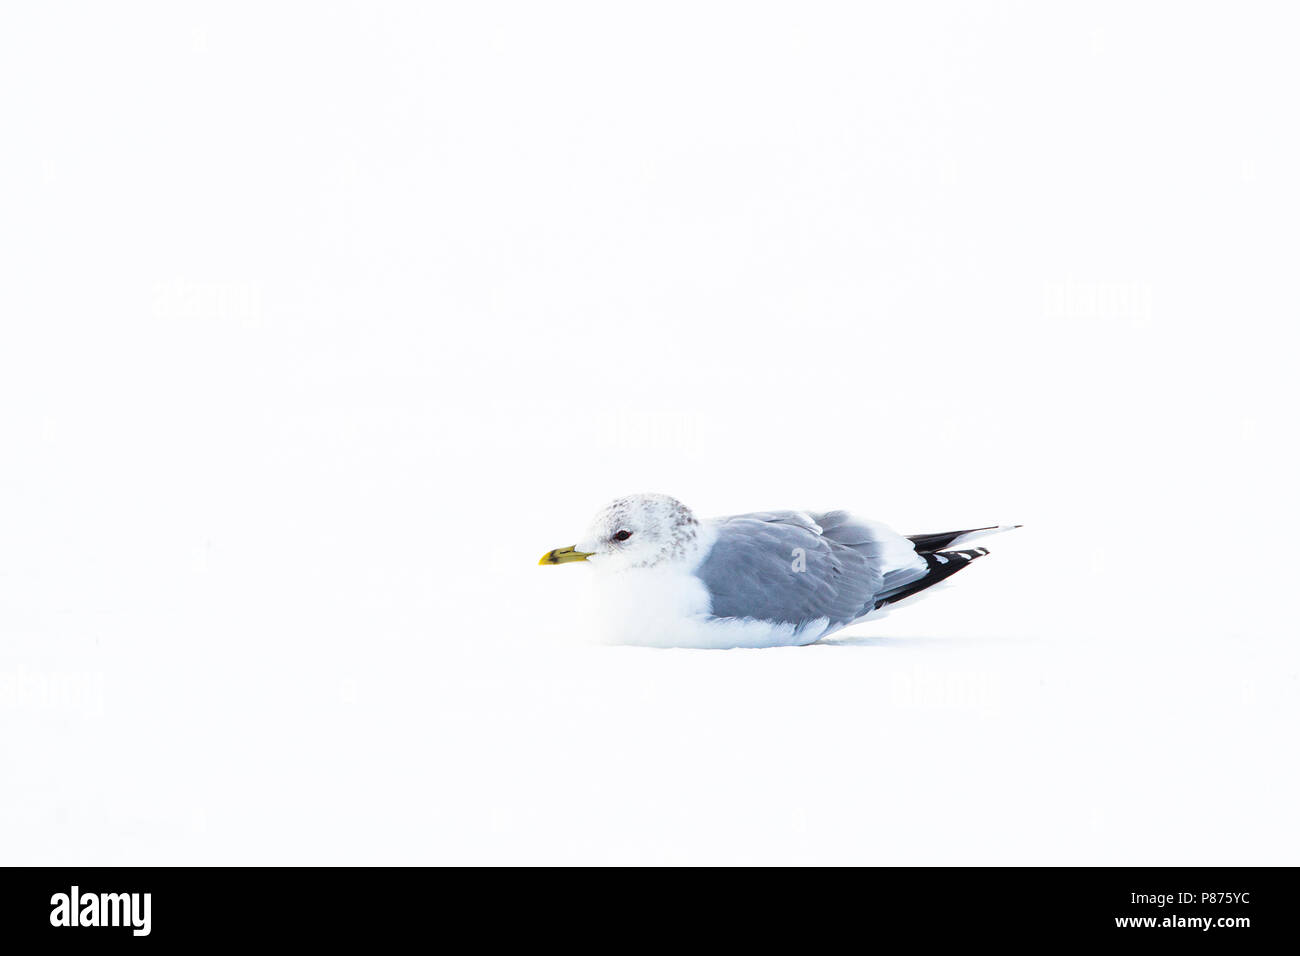 Stormmeeuw in de sneeuw Nederlands, Mew Gull im Schnee Niederlande Stockfoto